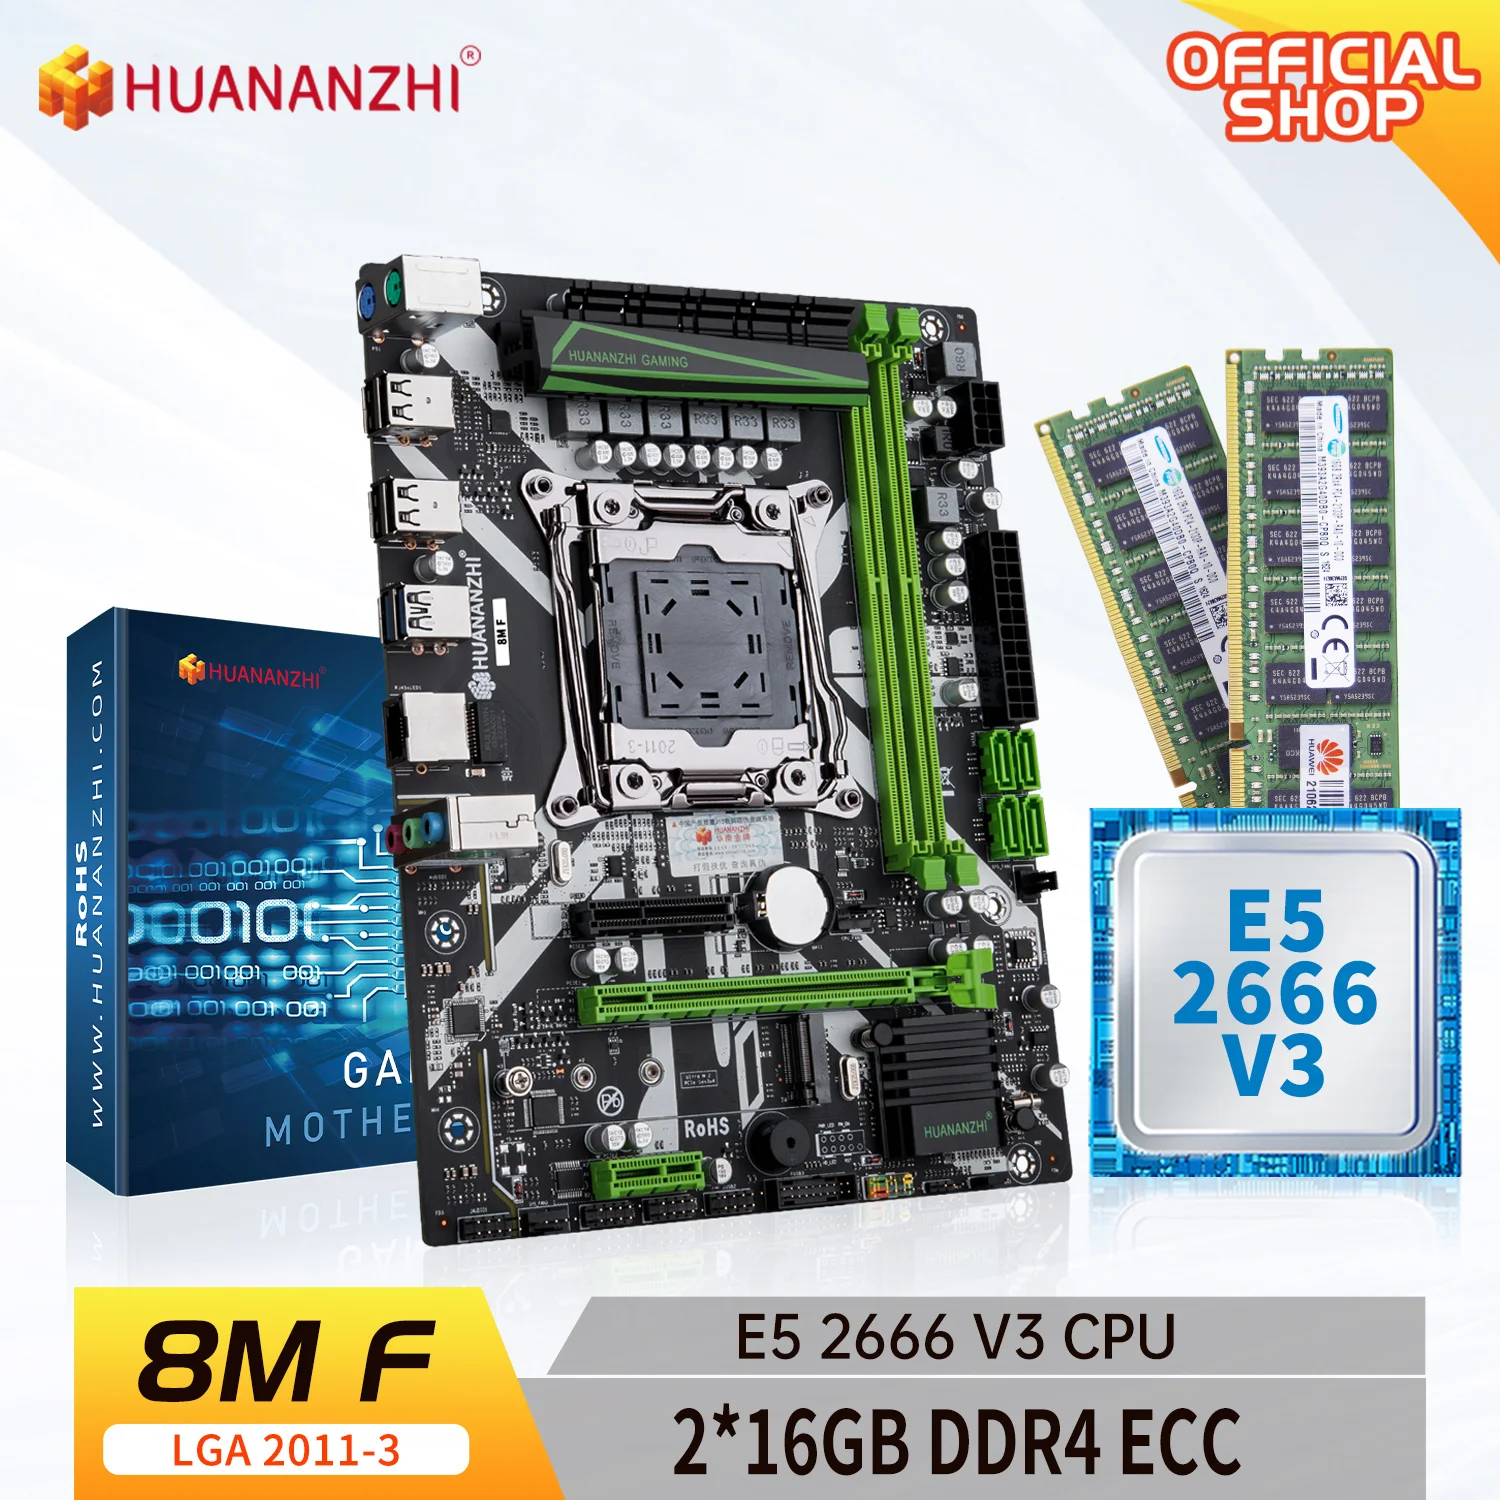 

HUANANZHI X99 8M F LGA 2011-3 XEON X99 материнская плата с Intel E5 2666 V3 с 2*16G DDR4 RECC память комбинированный комплект NVME